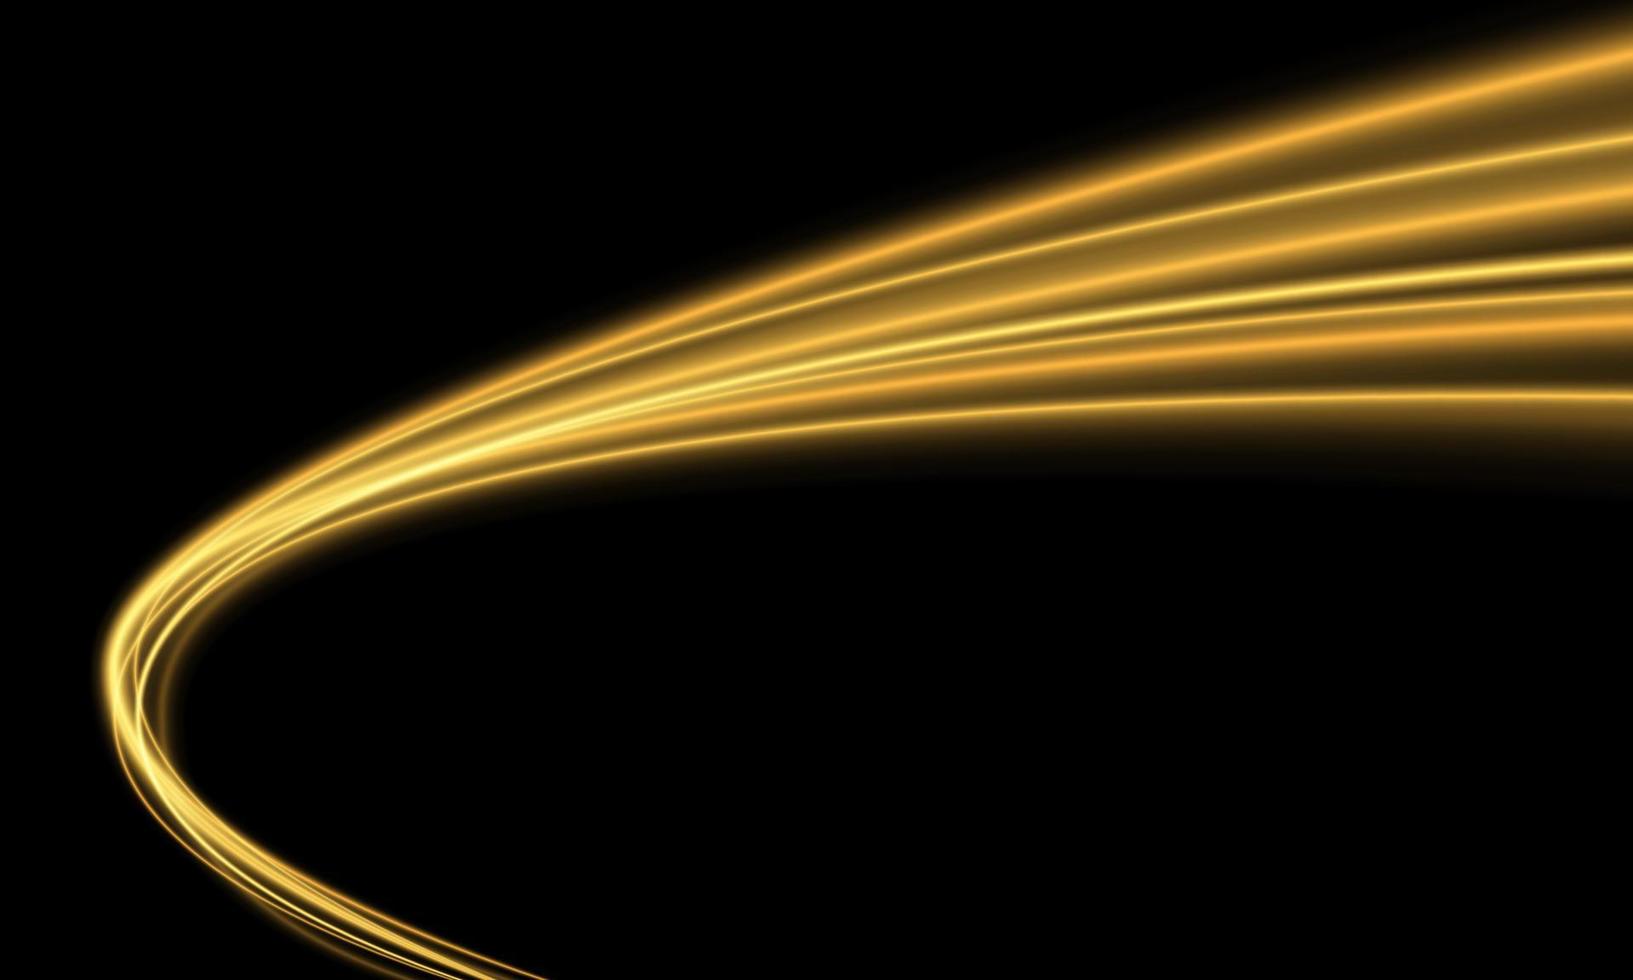 abstrakte goldlichtgeschwindigkeitskurve auf schwarzem hintergrundvektor der transporttechnologie vektor